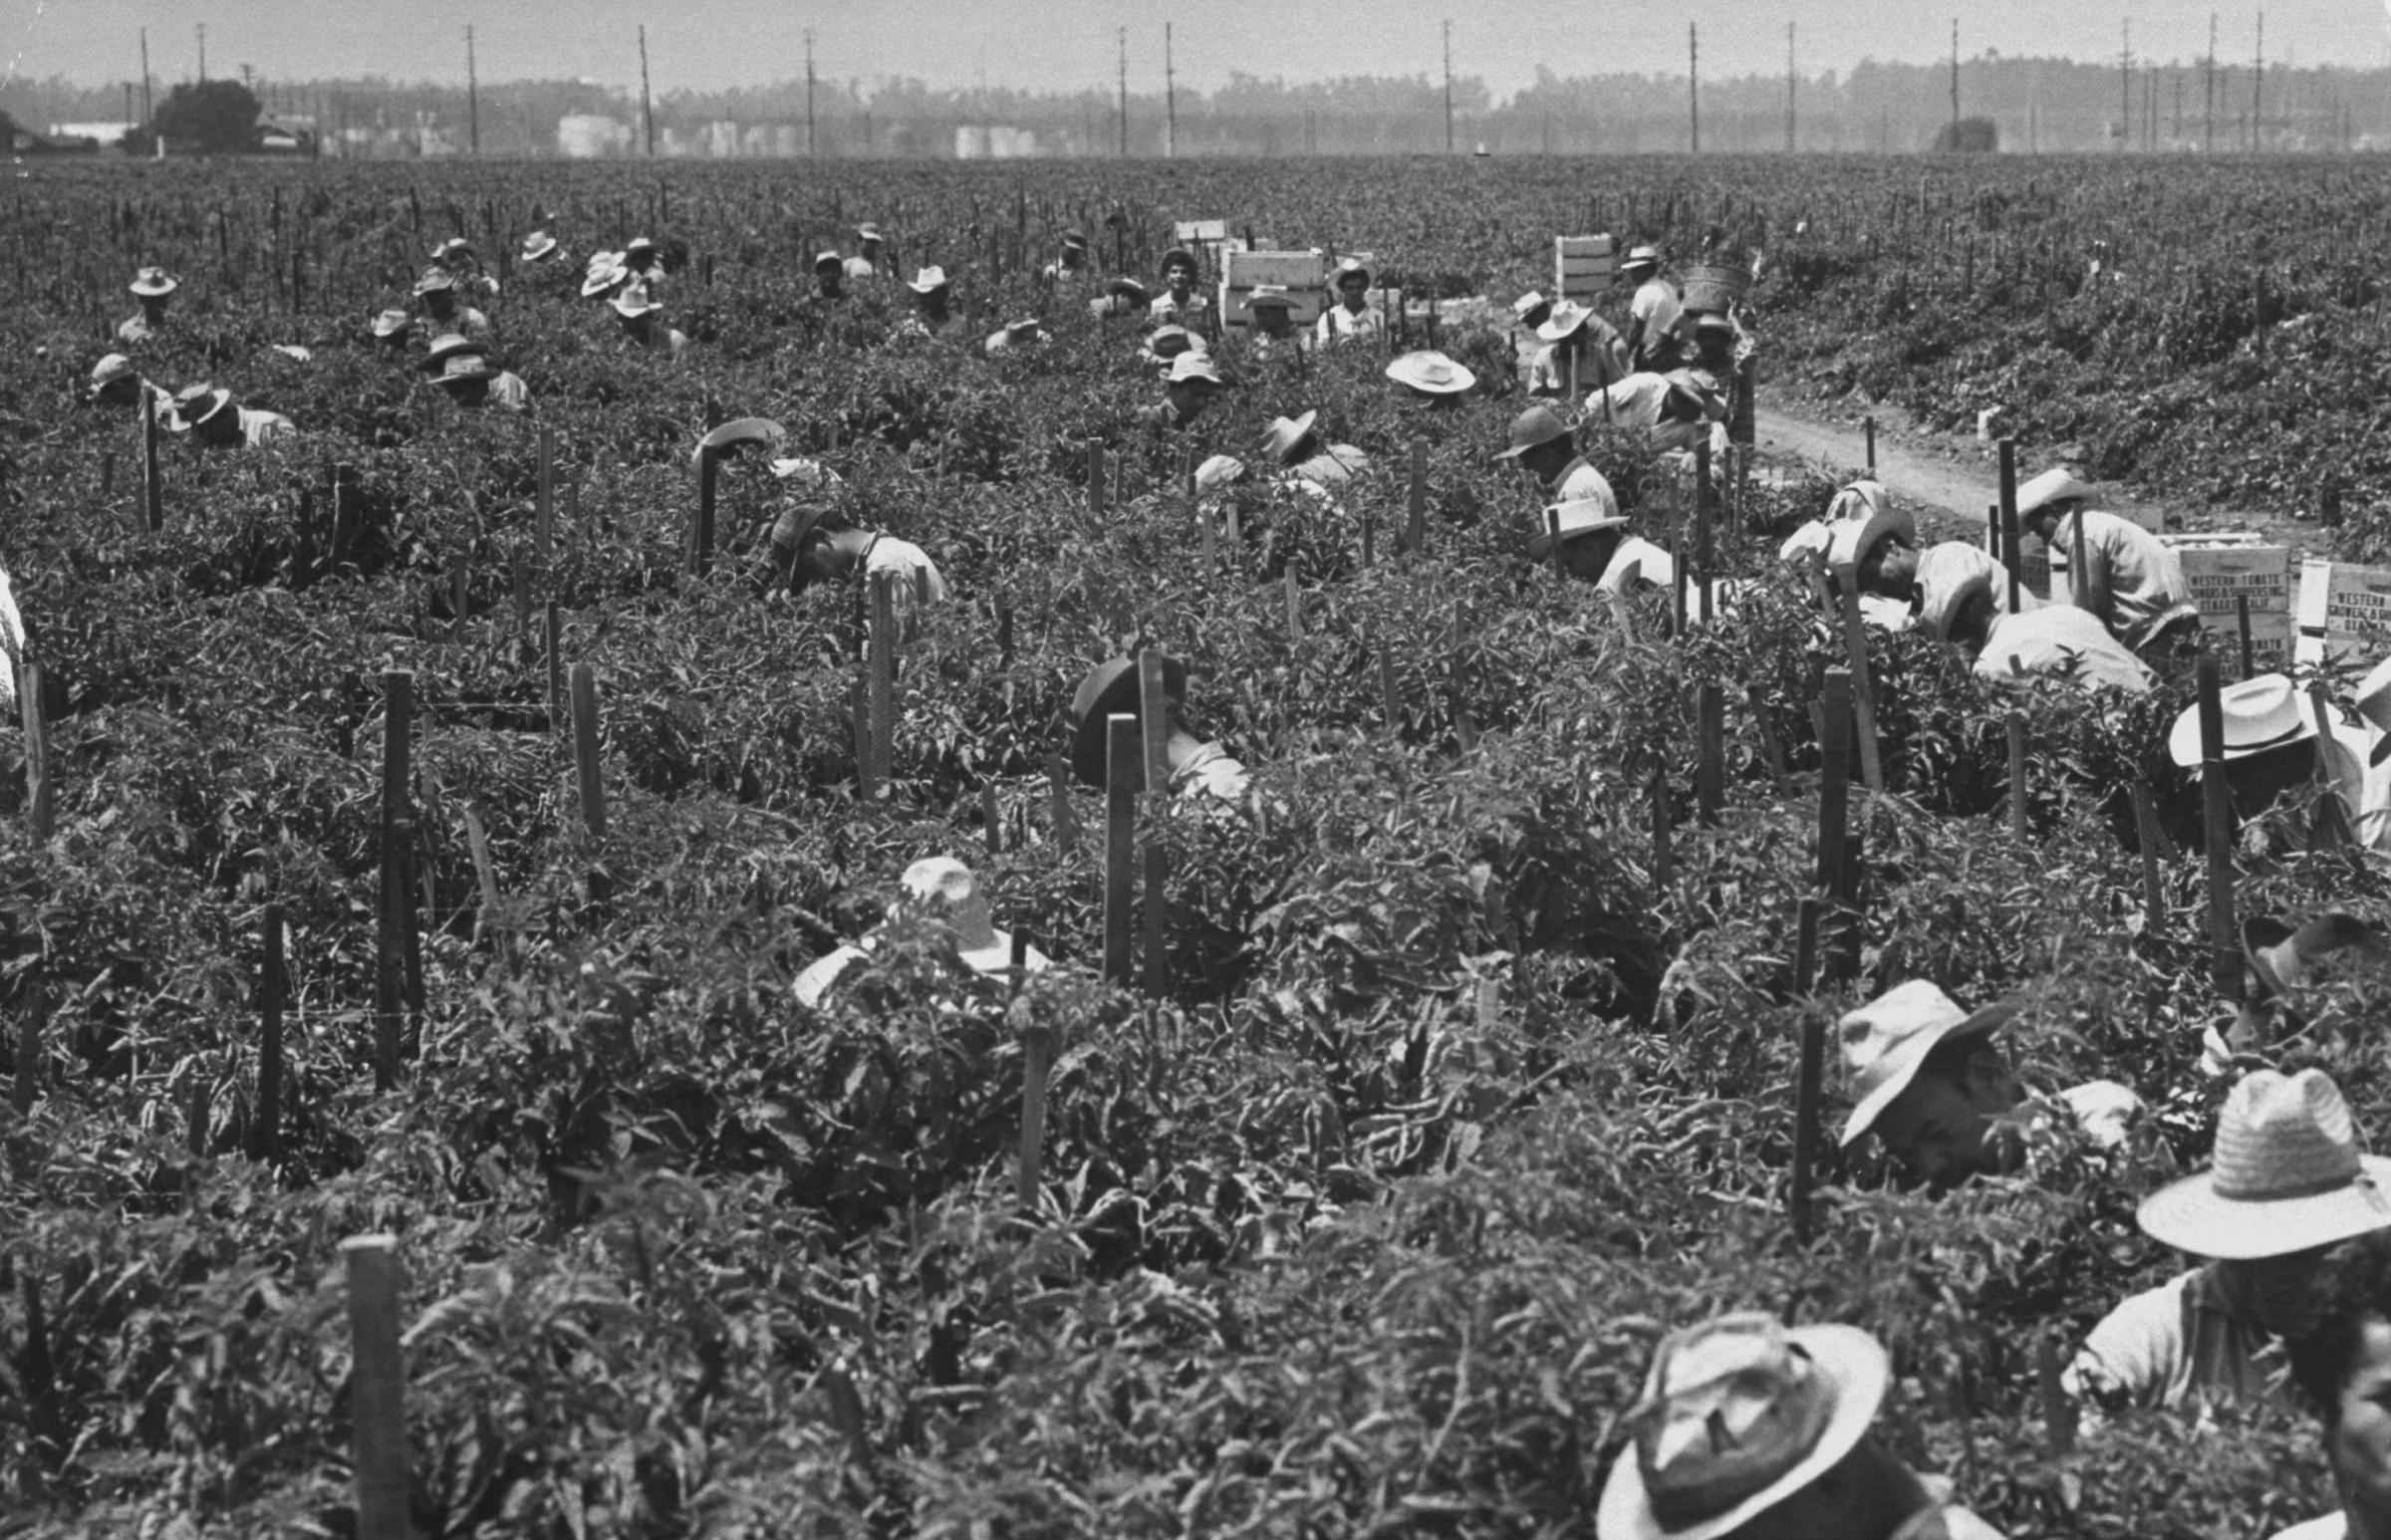 Mexican migrant farm laborers pick tomatoes in Ventura County, California, 1959.